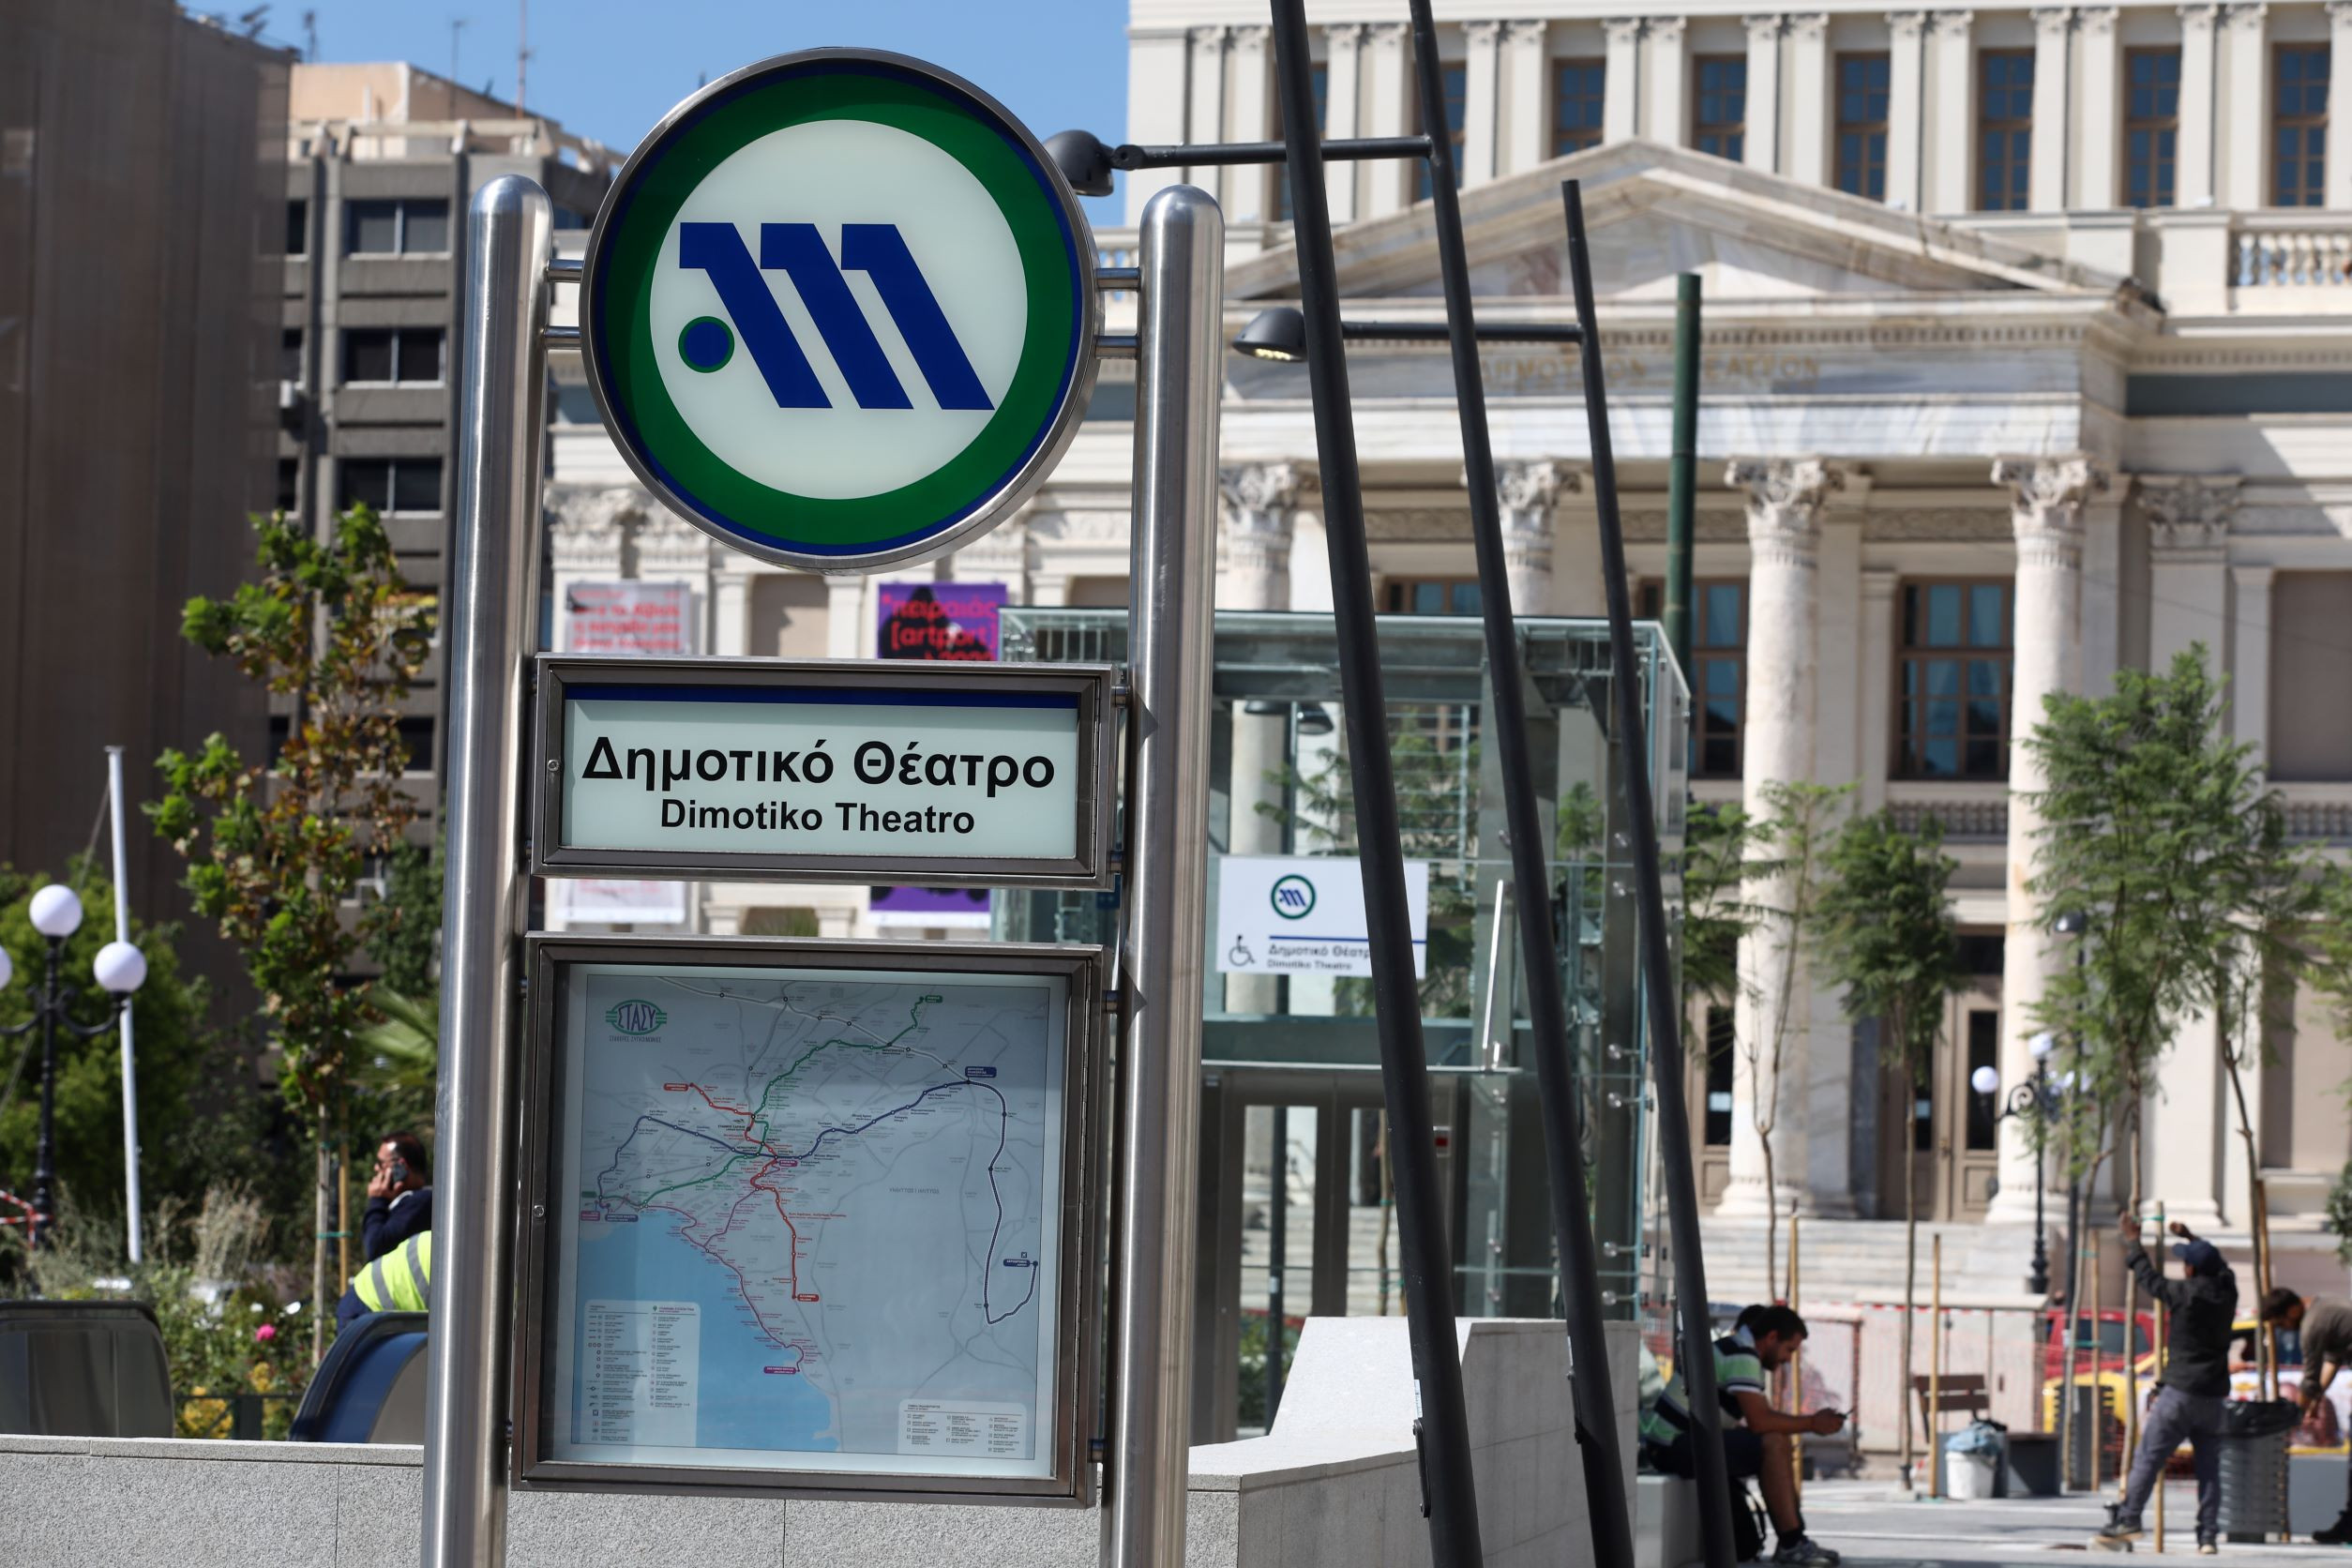 Μυλόπουλος για Μητσοτάκη: «Χαμπάρι δεν πήρε για τη διαφορά μεταξύ κατασκευής και λειτουργίας» του μετρό